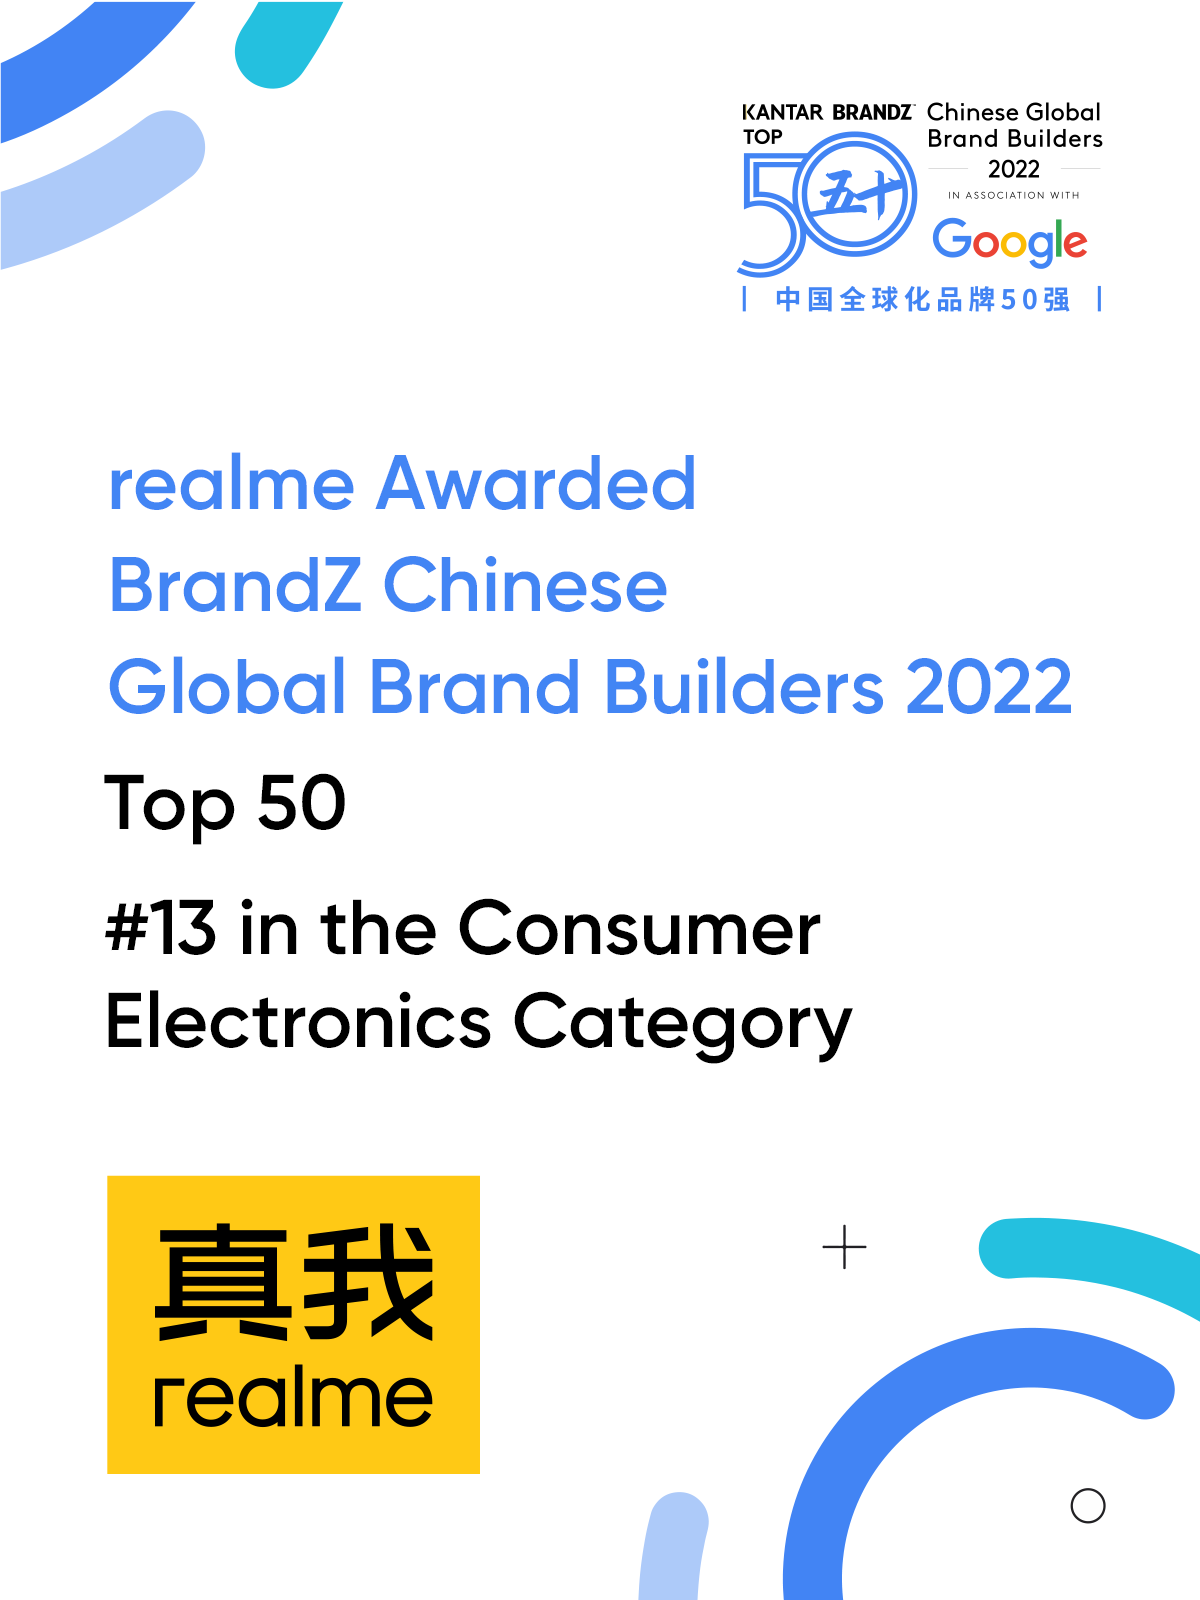 Realme vào danh sách 50 Thương hiệu Trung Quốc xây dựng thương hiệu tốt nhất 2022 - Ảnh 2.